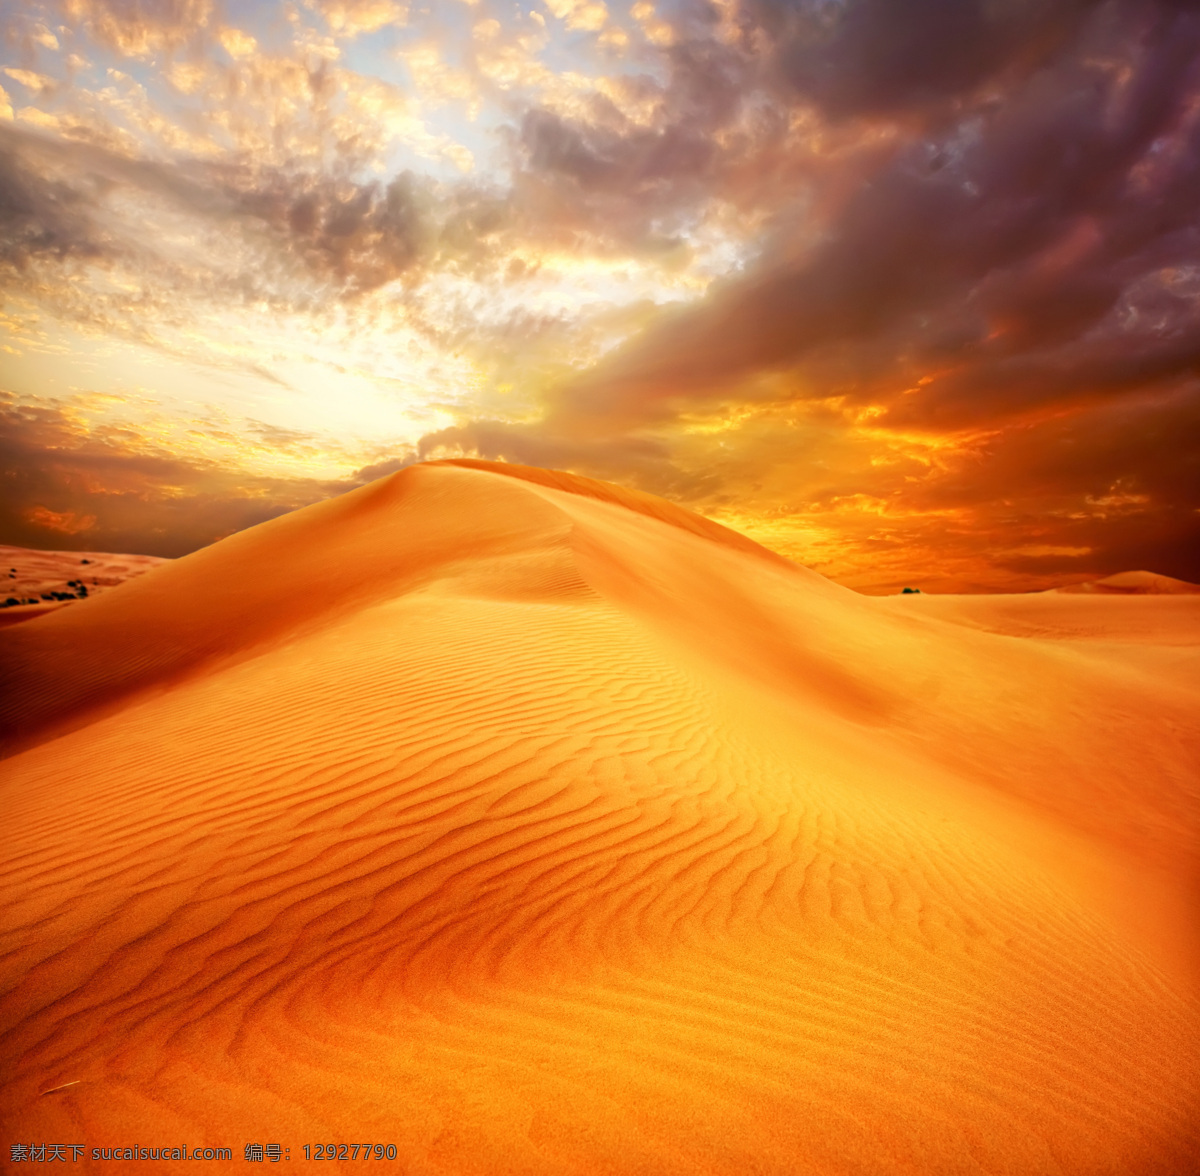 炎热的沙漠 天空 白云 炎热 沙漠 自然风景 自然景观 橙色